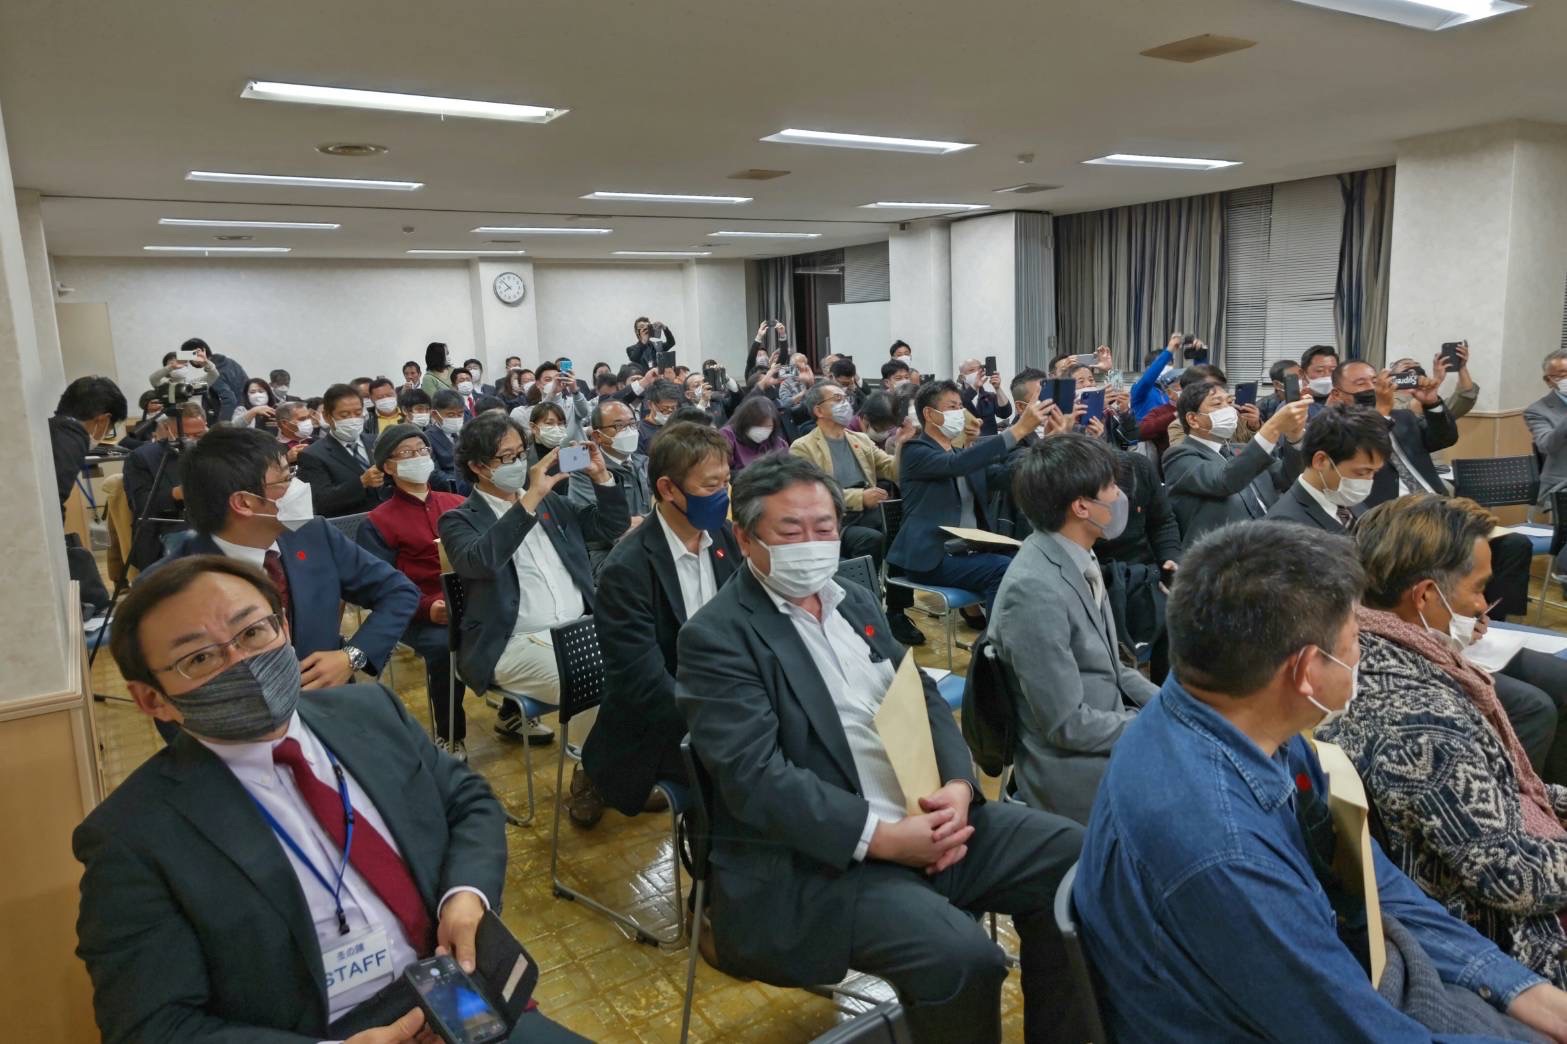 河野太郎デジタル大臣講演会  『デジタルが変える温もりある国造り』が開催されました。